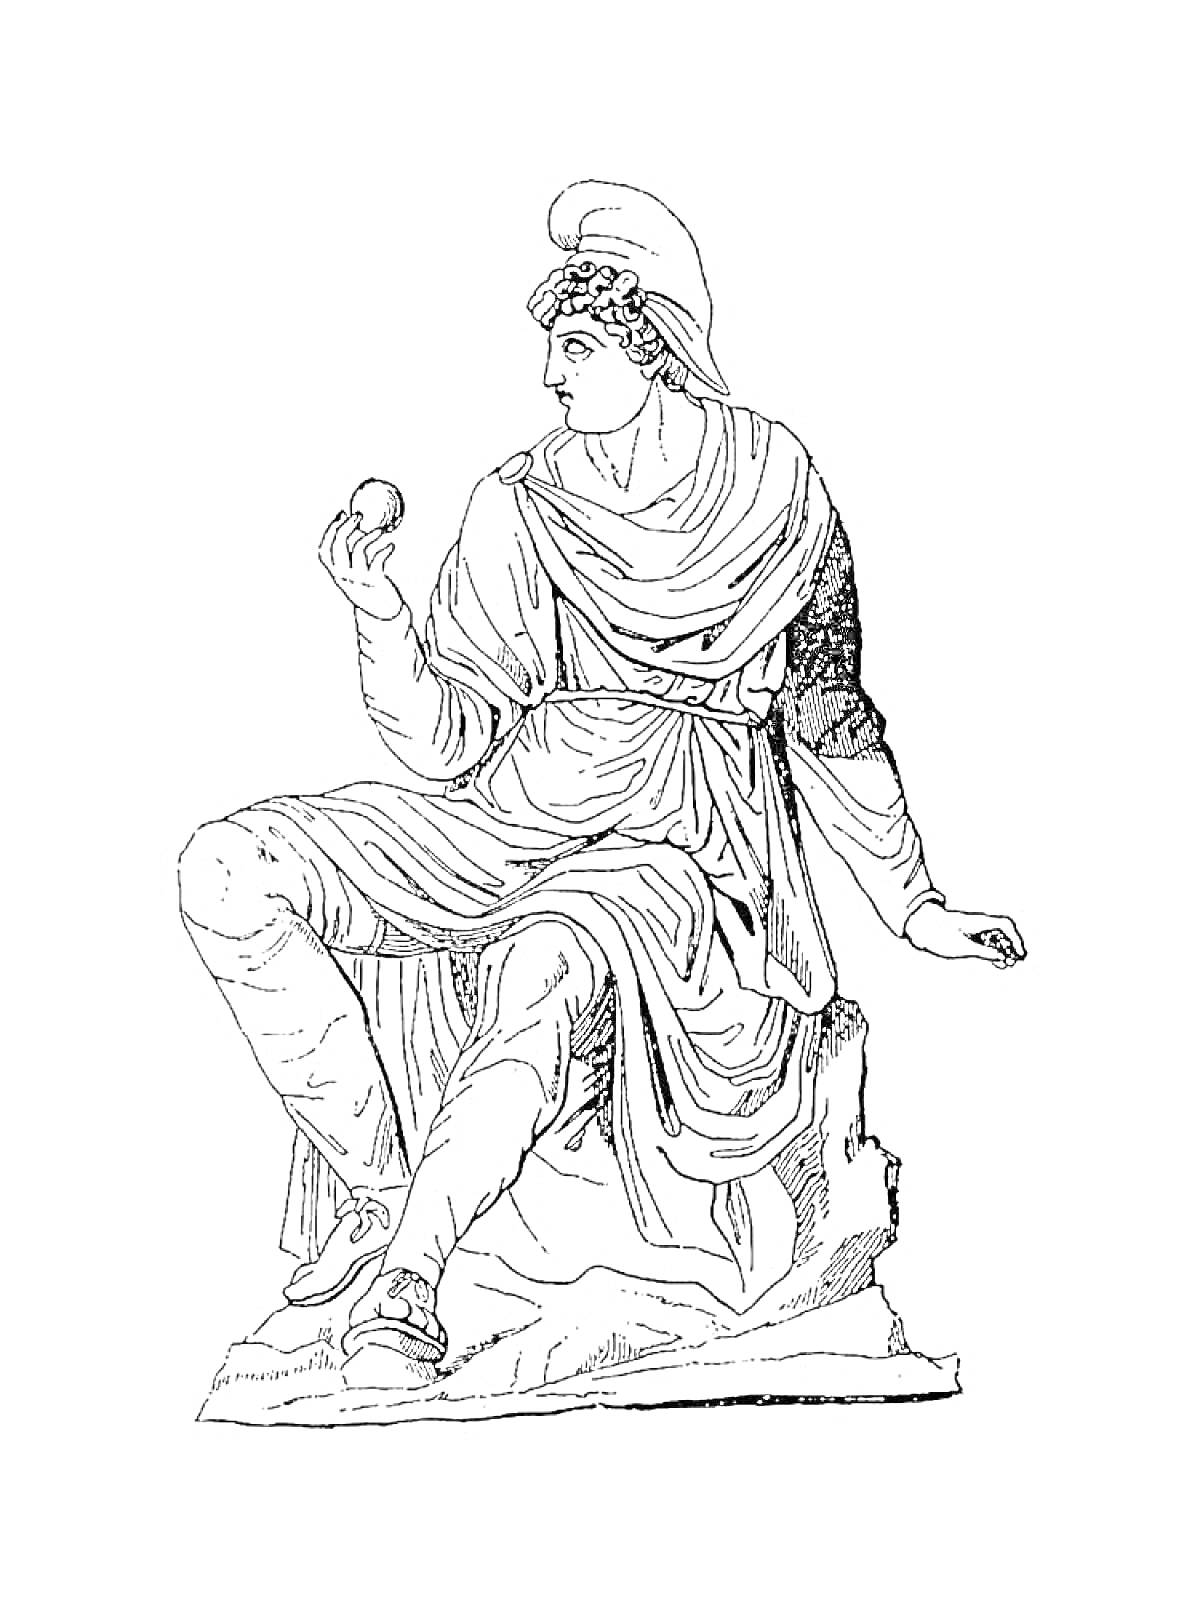 Раскраска Божественное существо в древнегреческом одеянии сидит с яблоком в руке